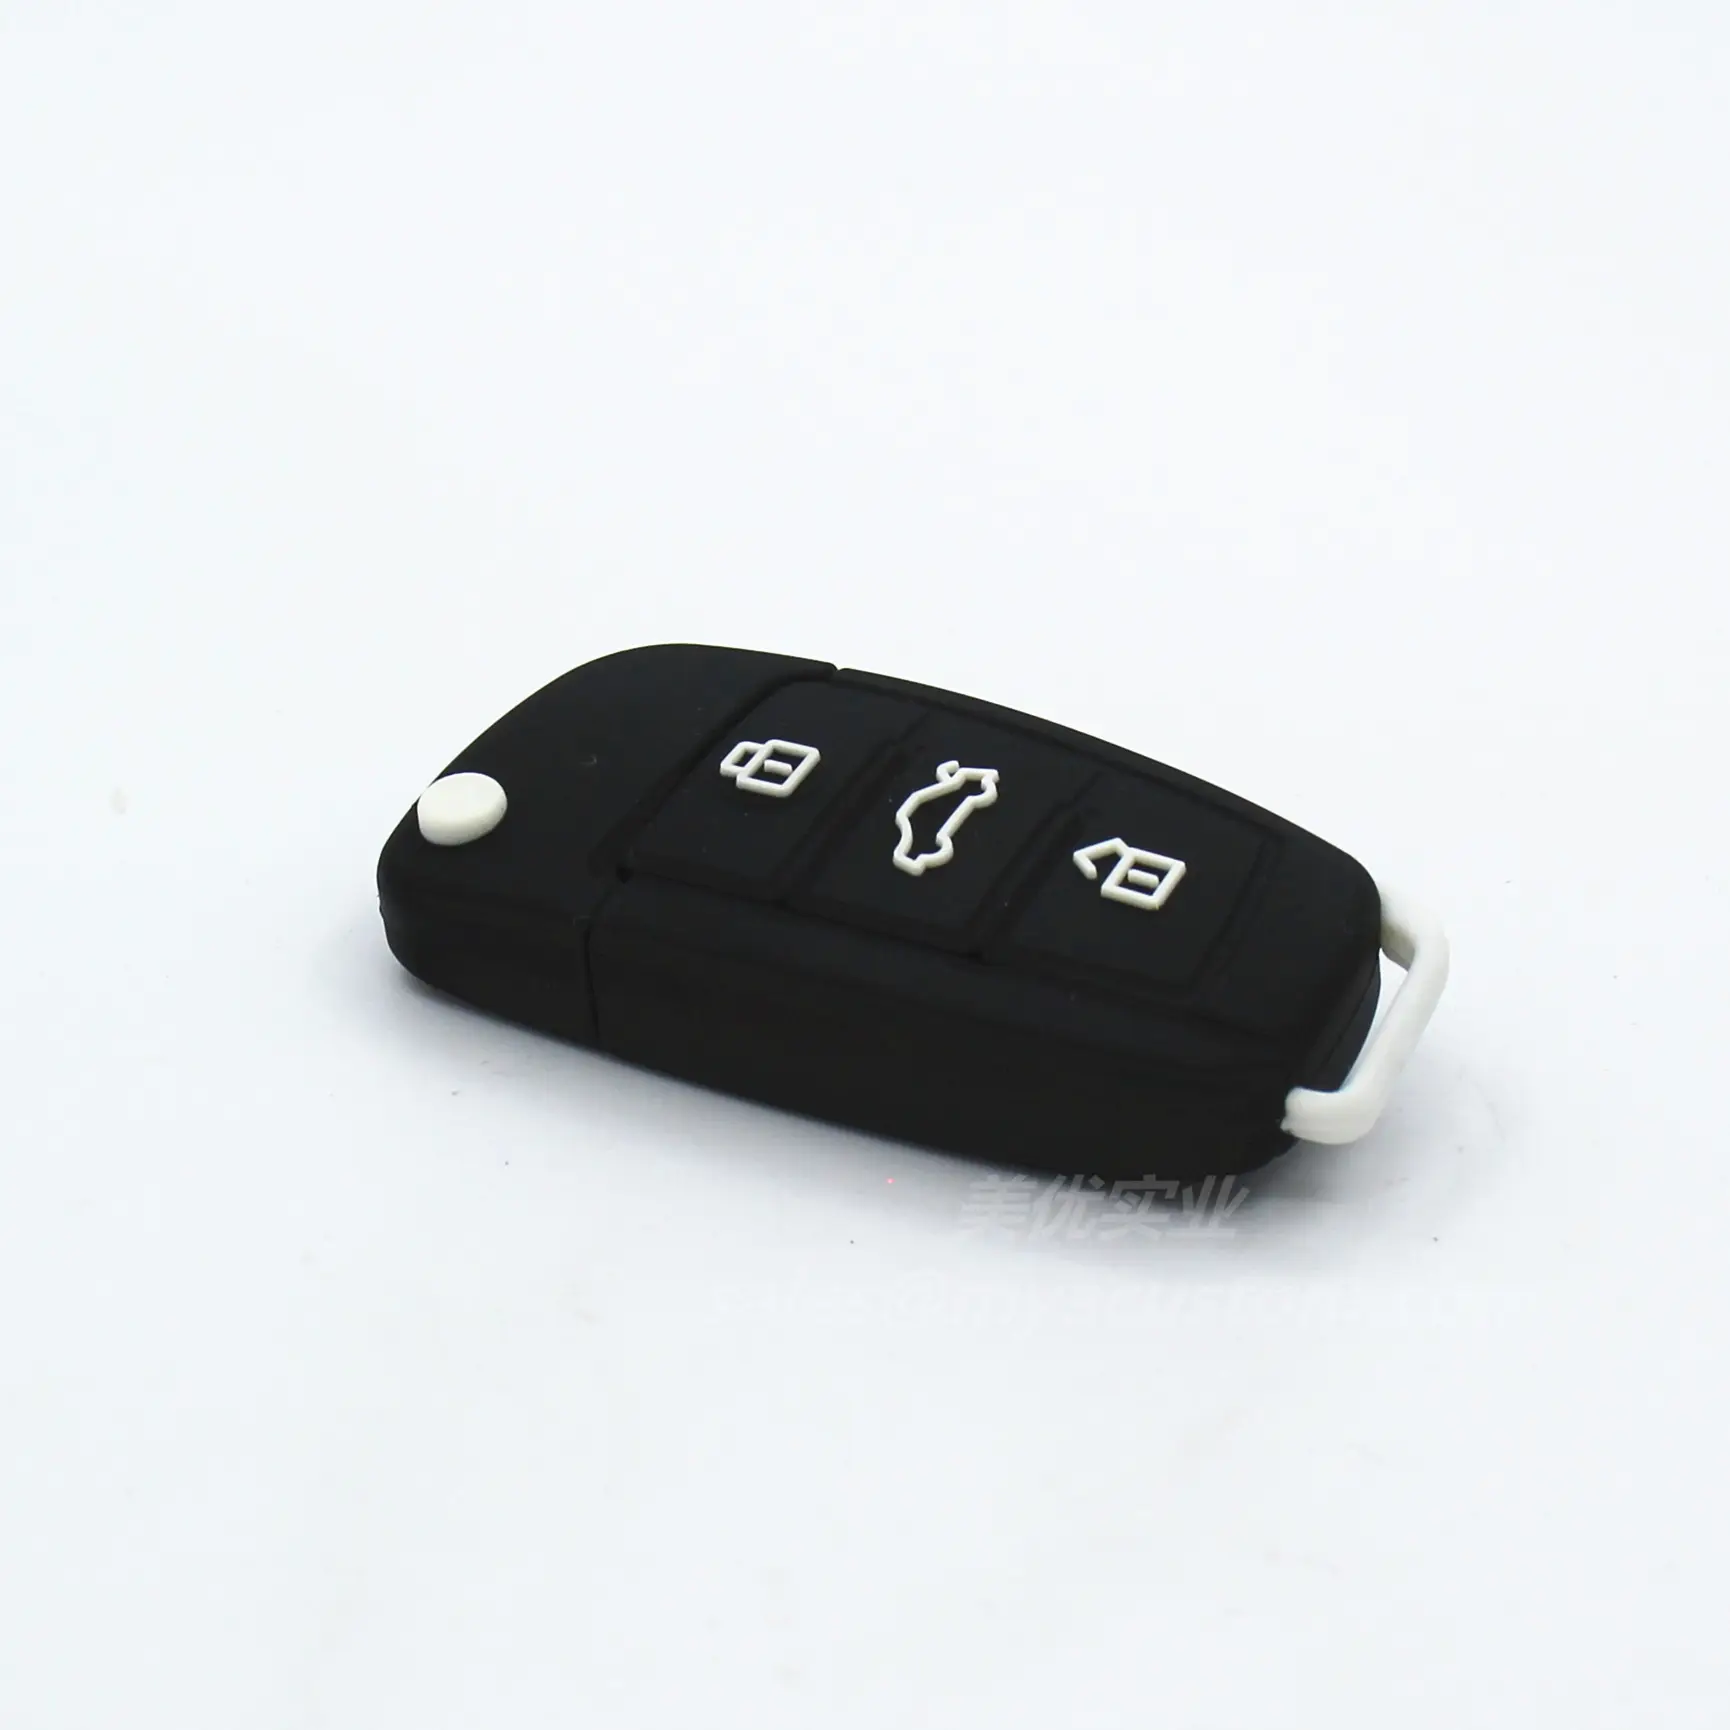 100 % echt Kapazität Auto Schlüssel usb-Flash-Disk cartoon niedlicher Auto-Schlüssel Form 4.0 USB-Flash-Anlage